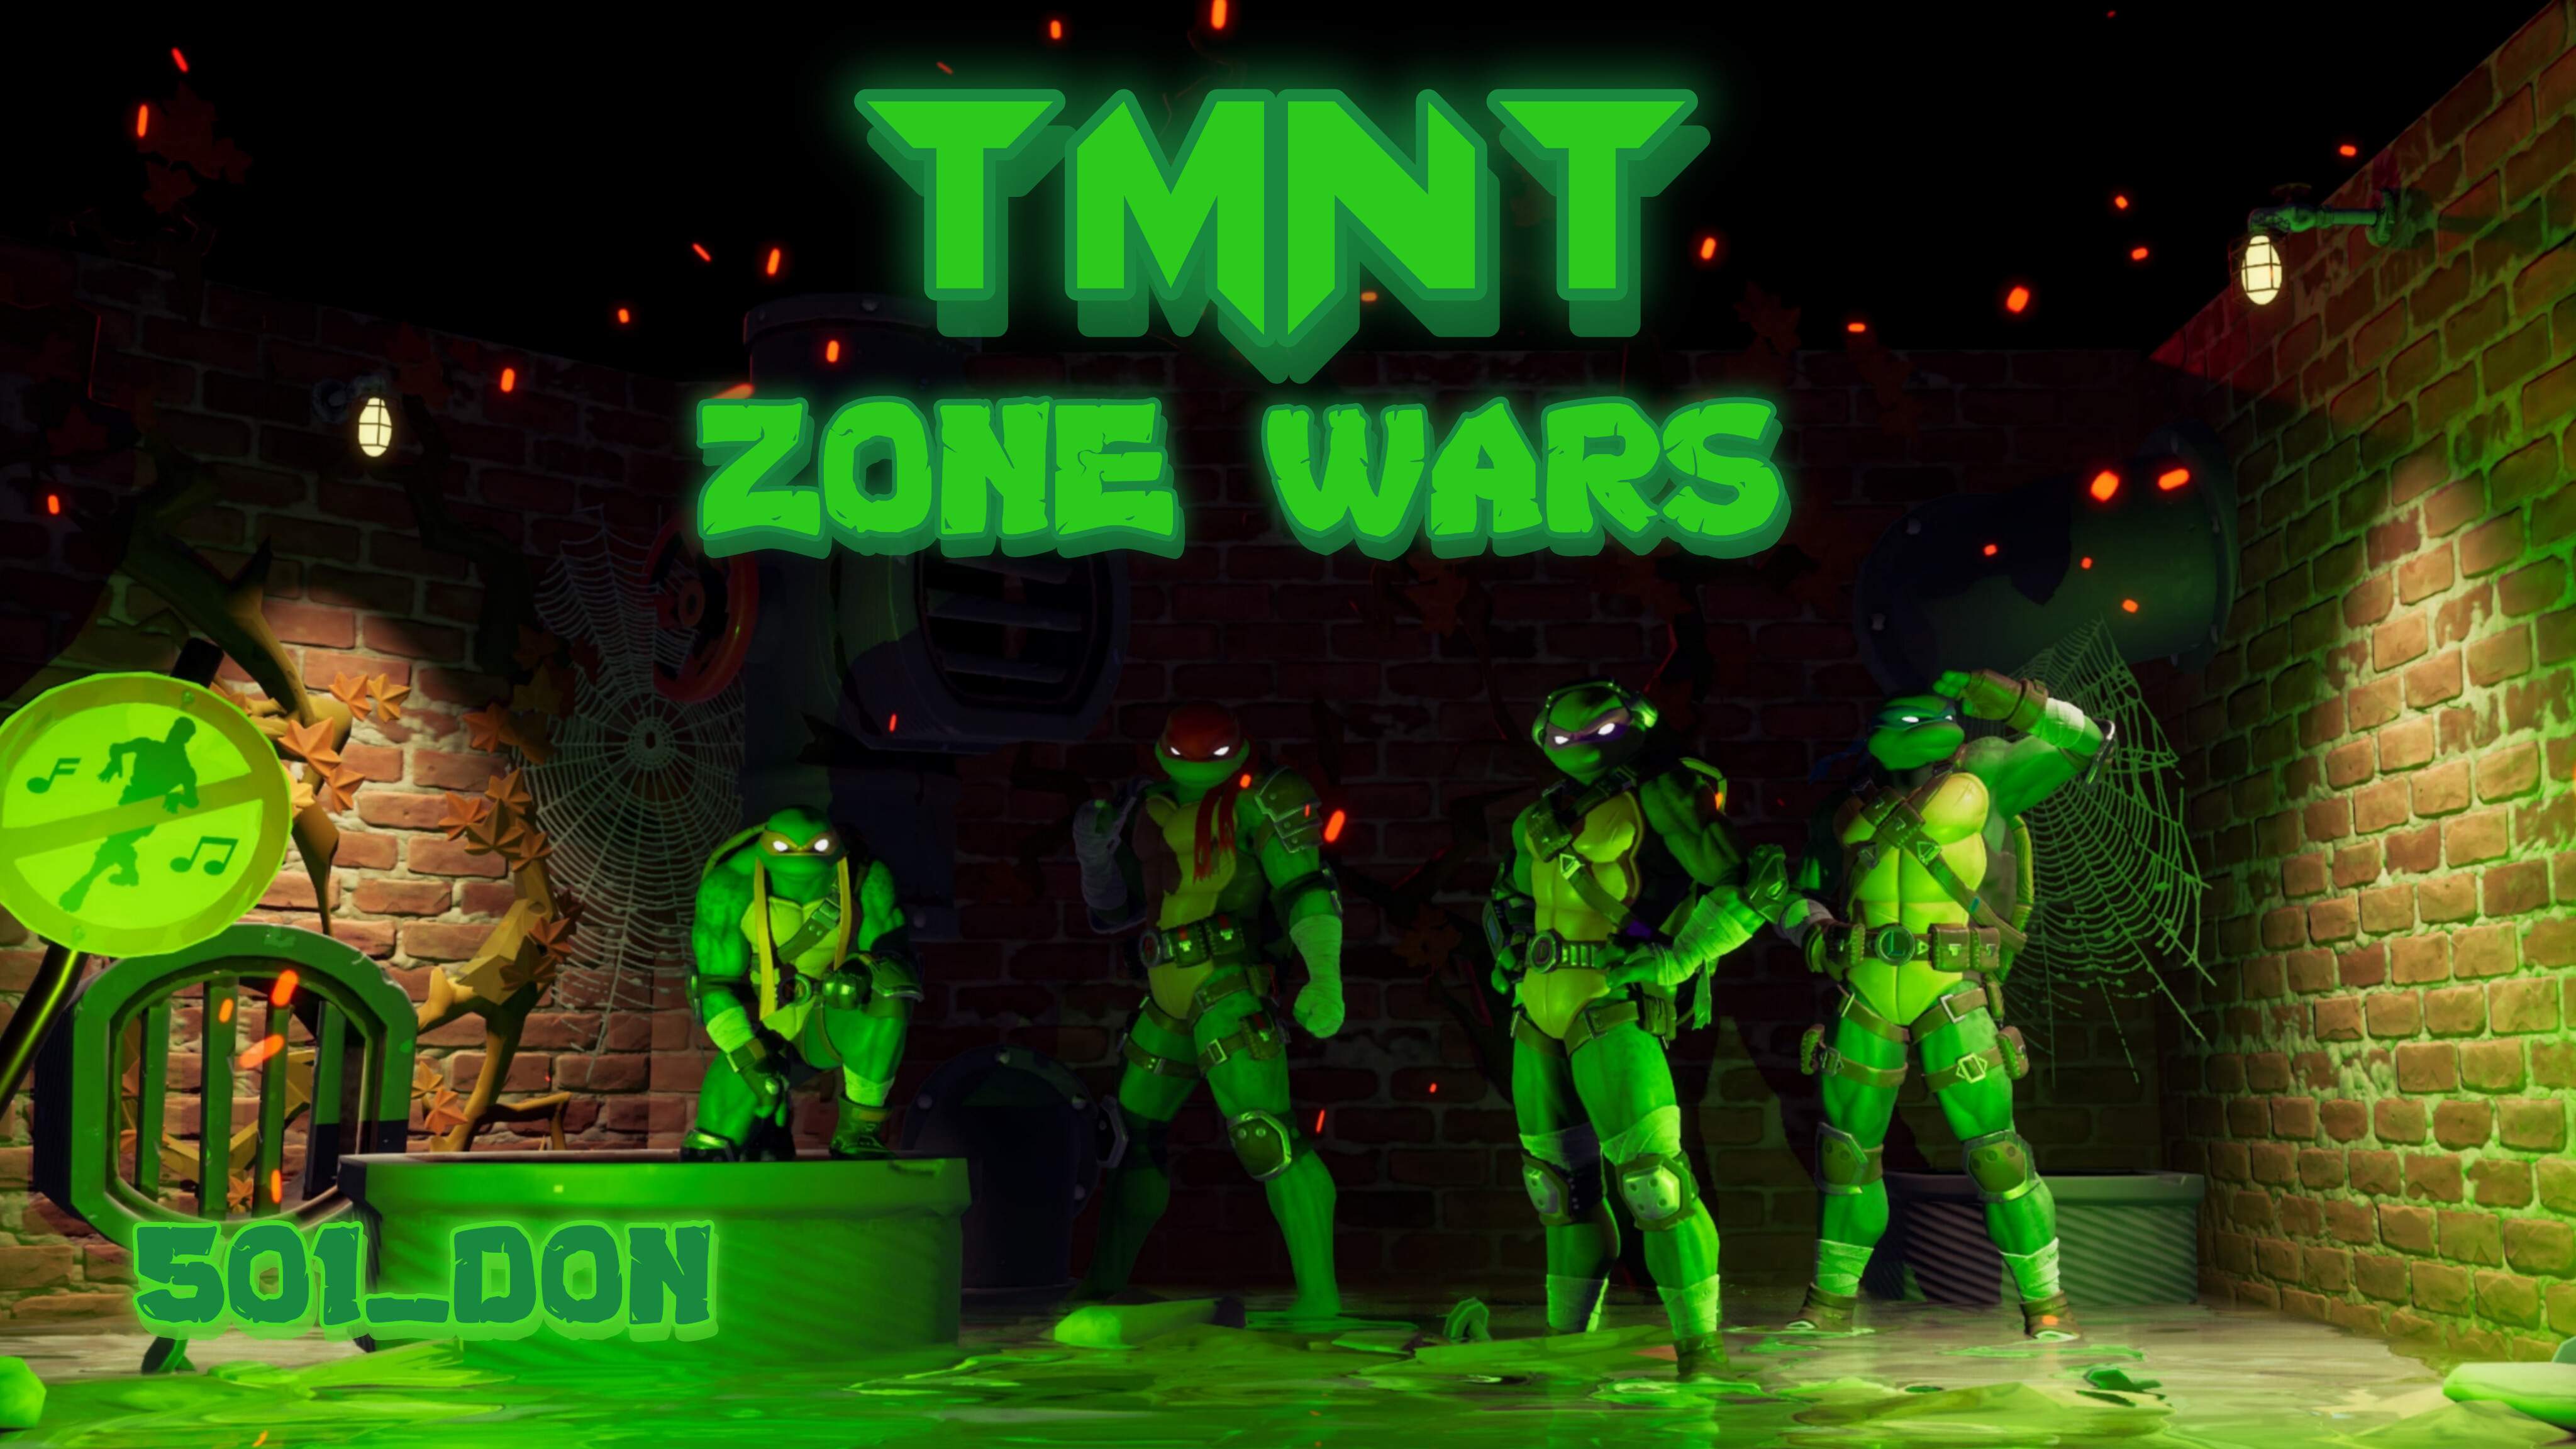 TMNT Zone wars